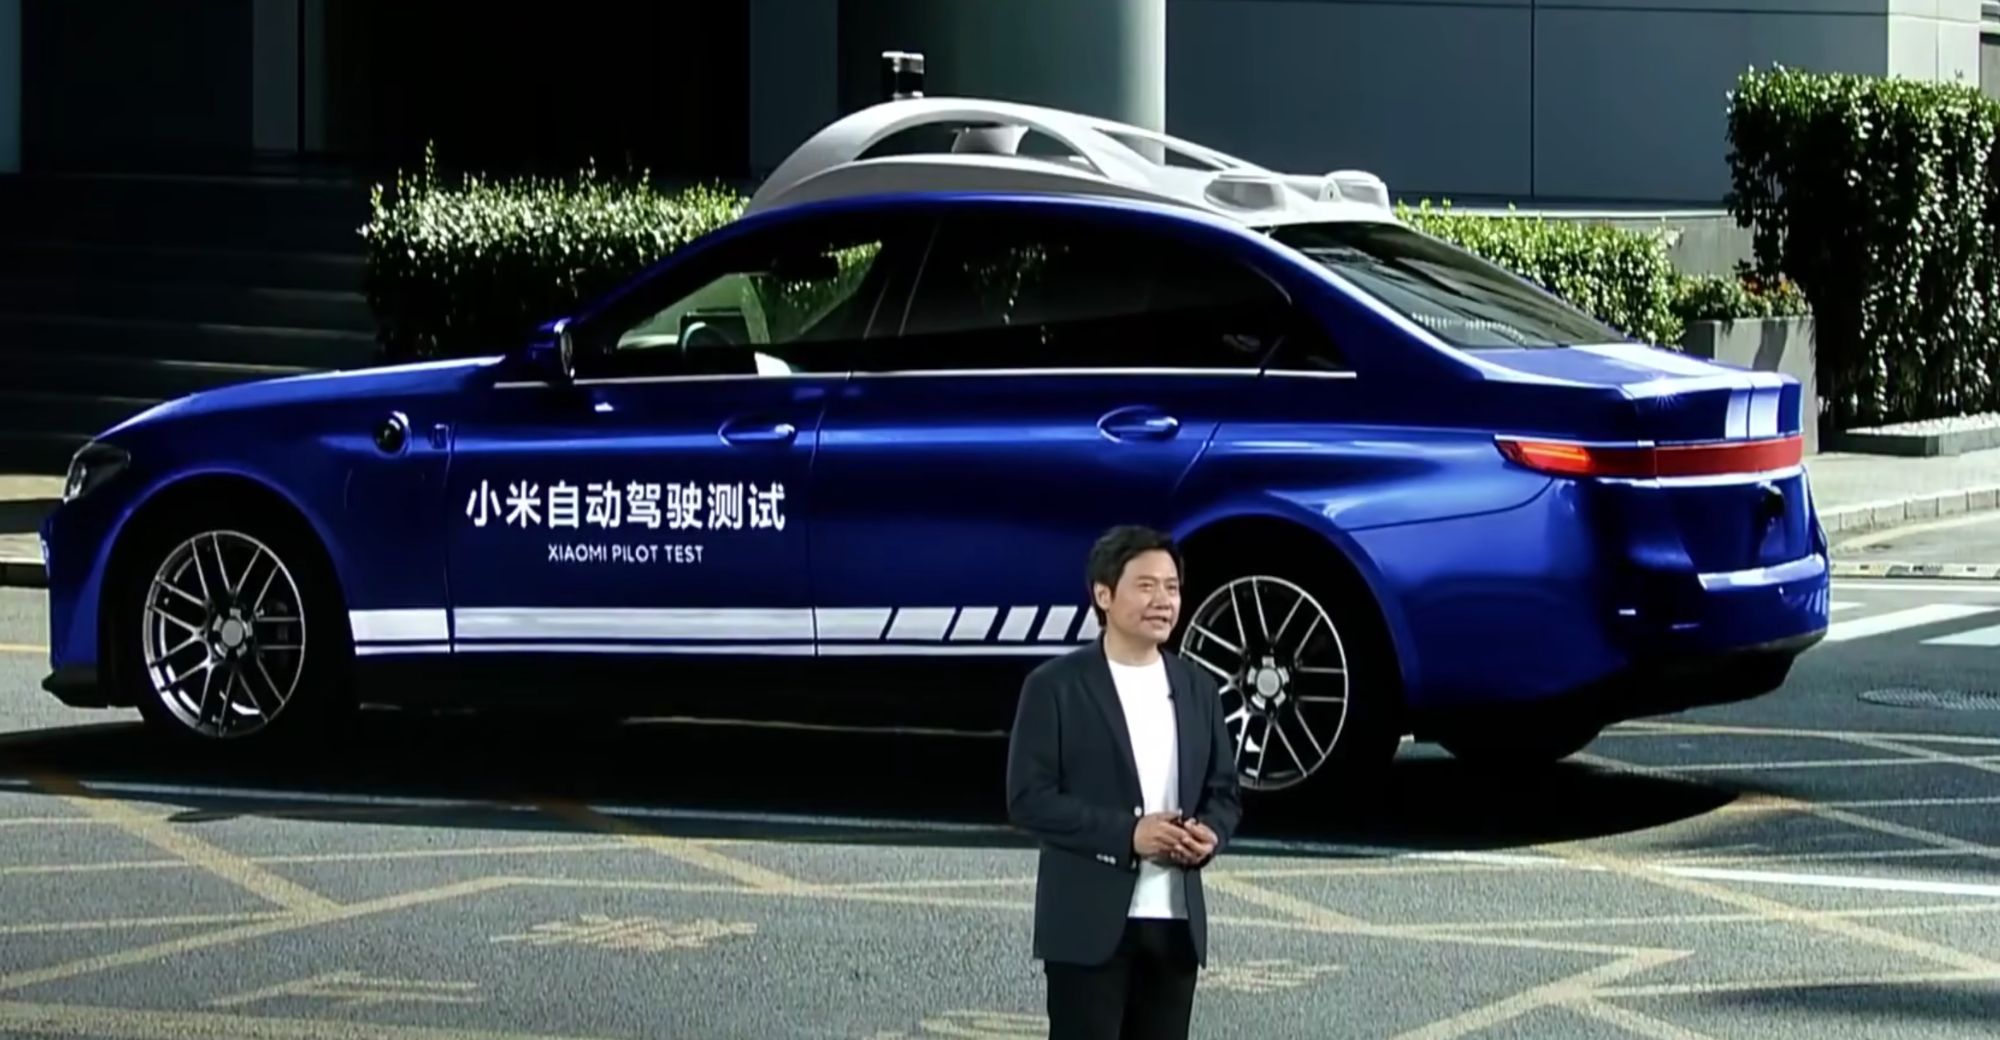 شبكة السيارات الصينية – شاومي عملاق صناعة التكنولوجيا القادم قريبًا لعالم السيارات يستثمر في شركة شنغهاي إنجين لتكنولوجيا السيارات